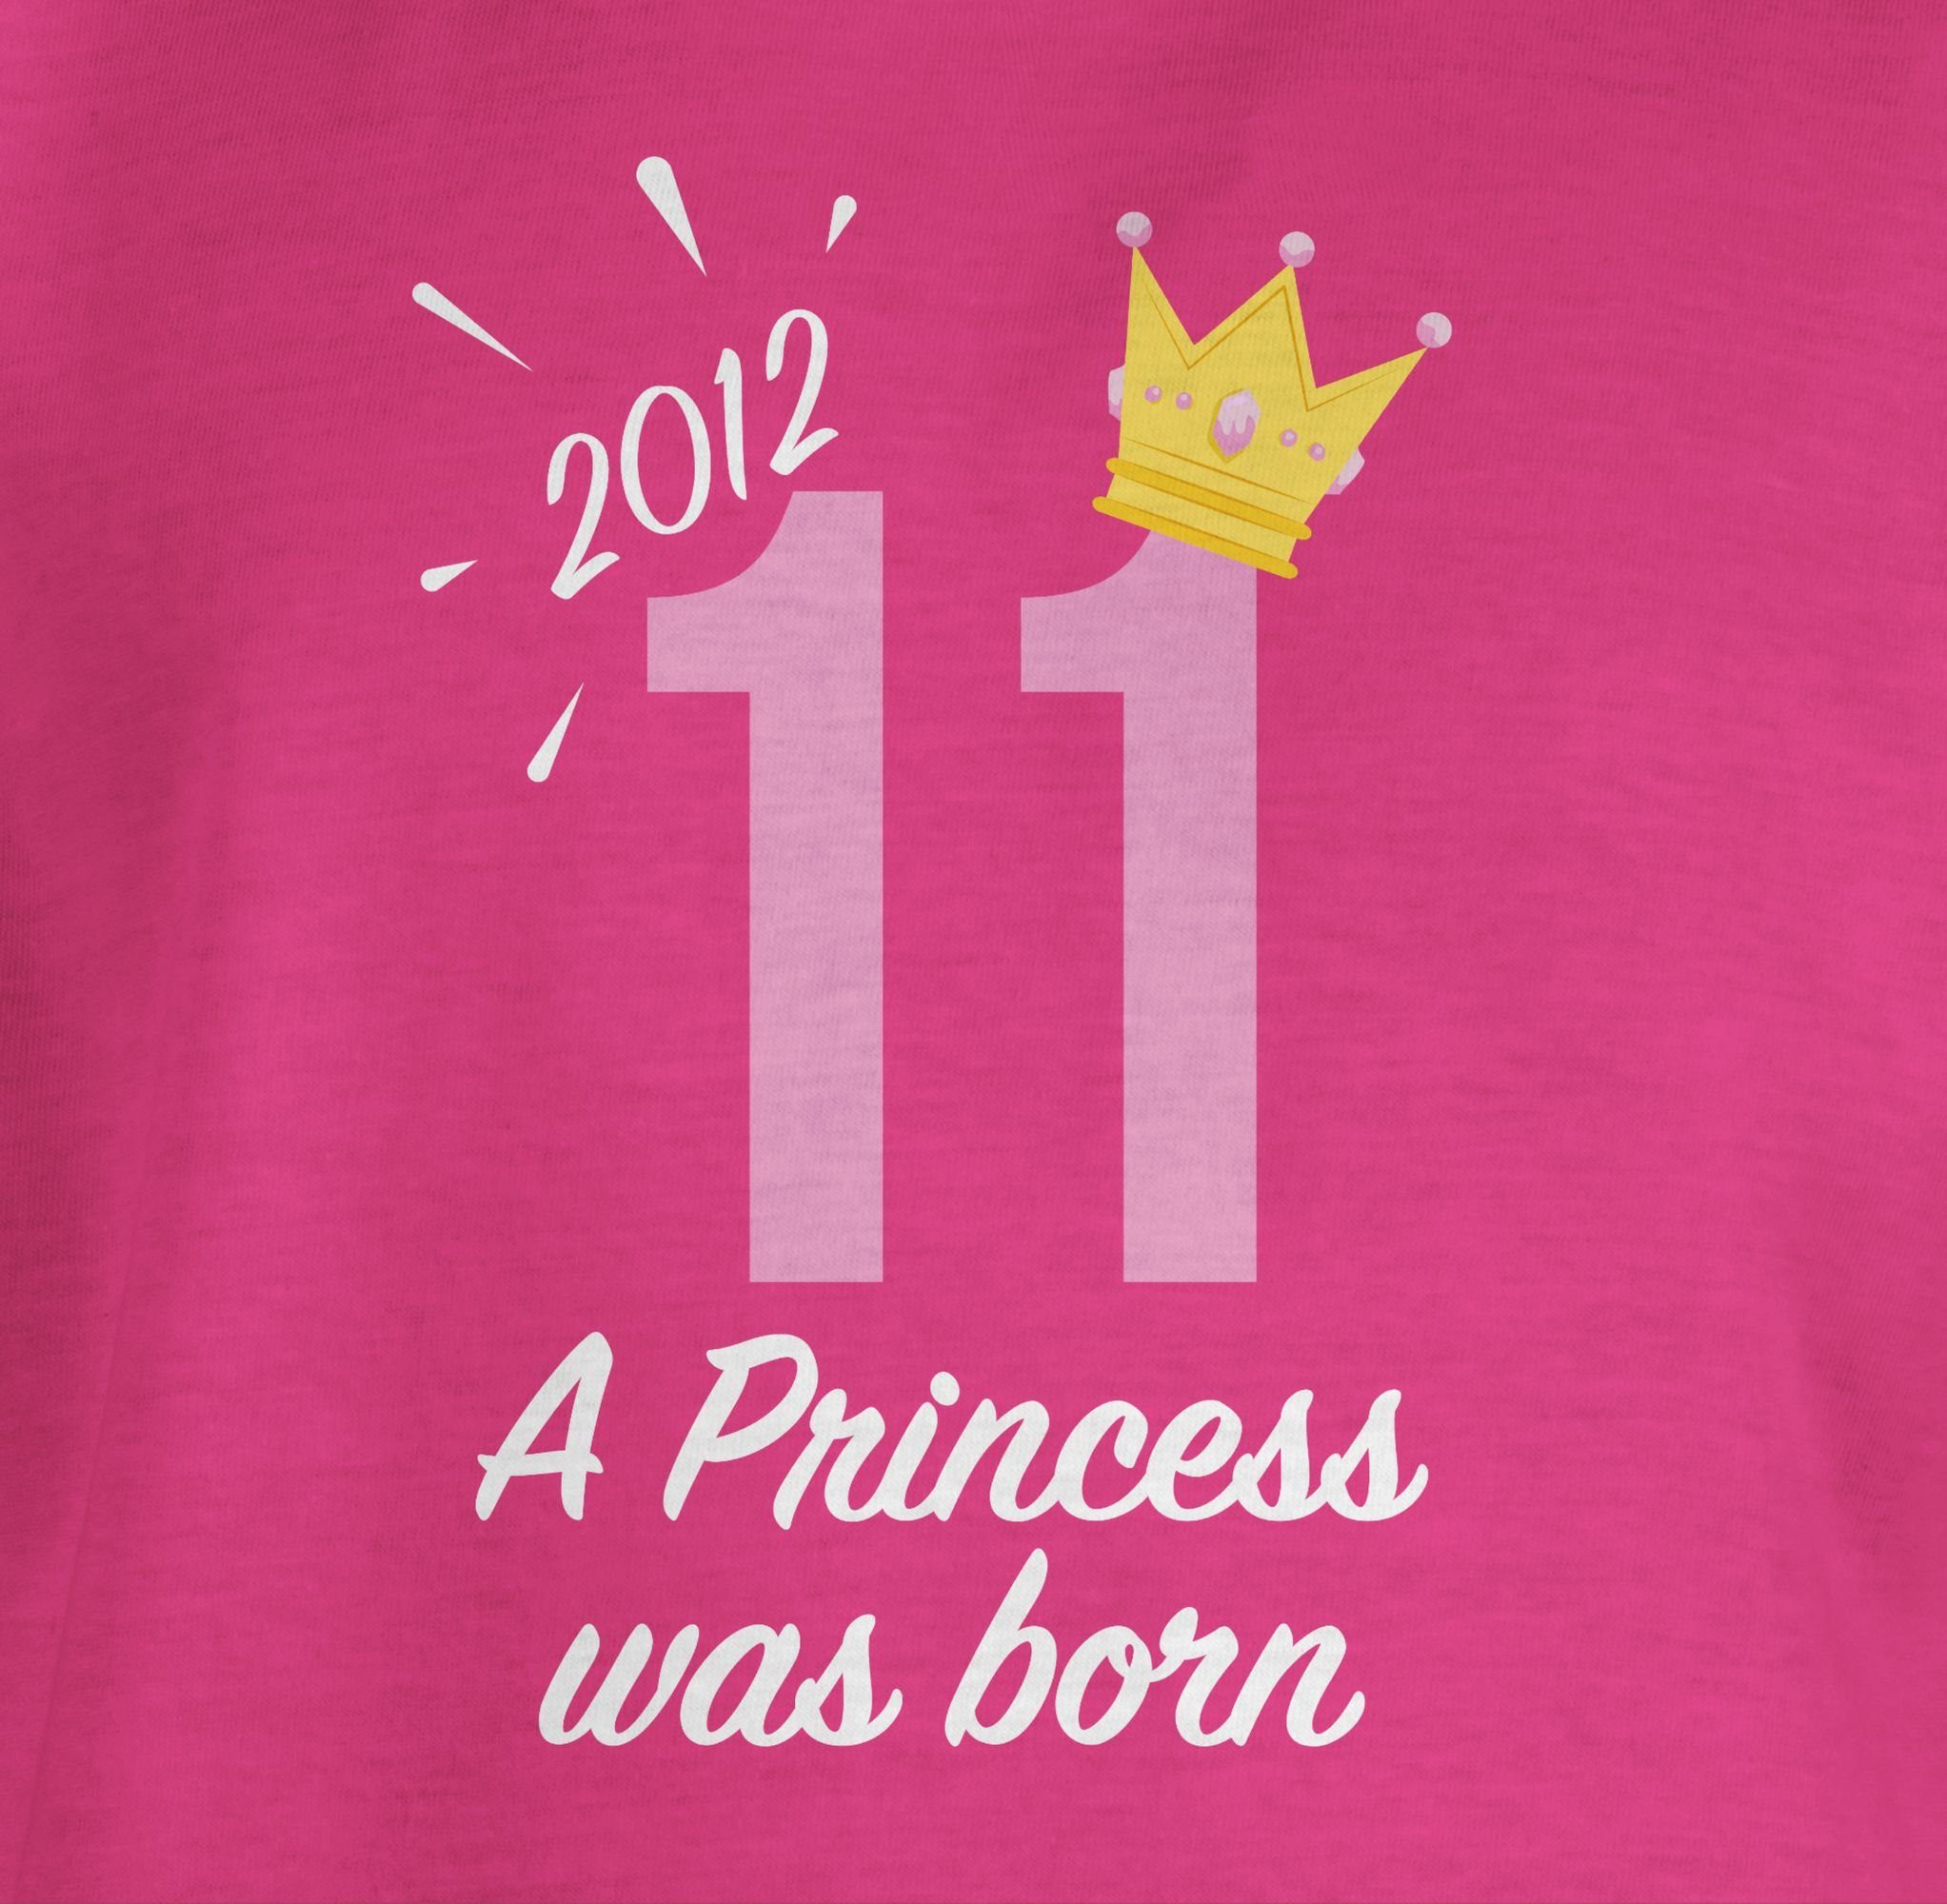 Shirtracer T-Shirt Mädchen Geburtstag Princess 11. 2012 Fuchsia 2 Elfter